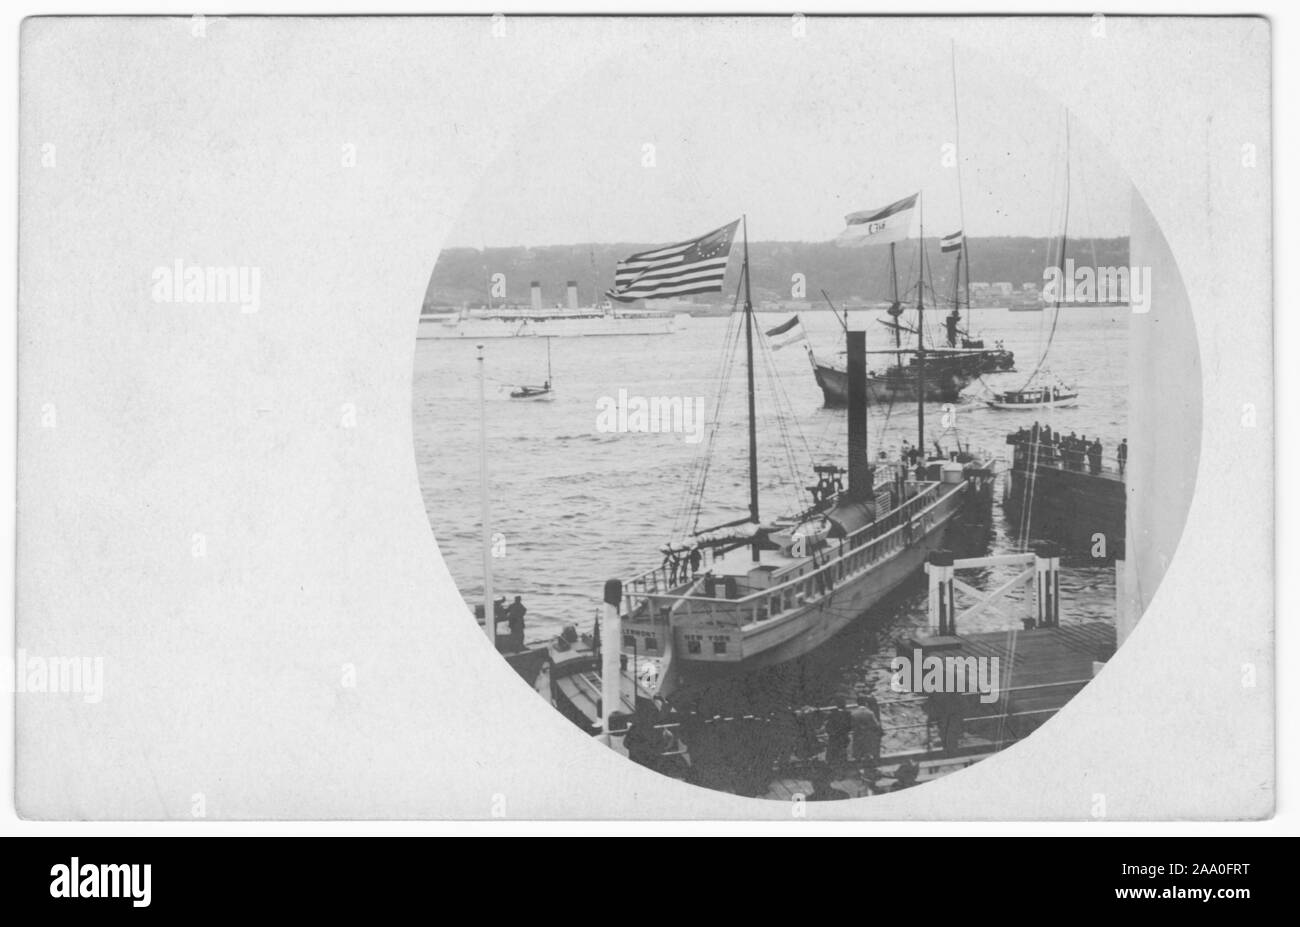 Carte postale gravé des répliques de l'Clermont et Hudson-Fulton Half-Moon navires durant la fête, 1909. À partir de la Bibliothèque publique de New York. () Banque D'Images